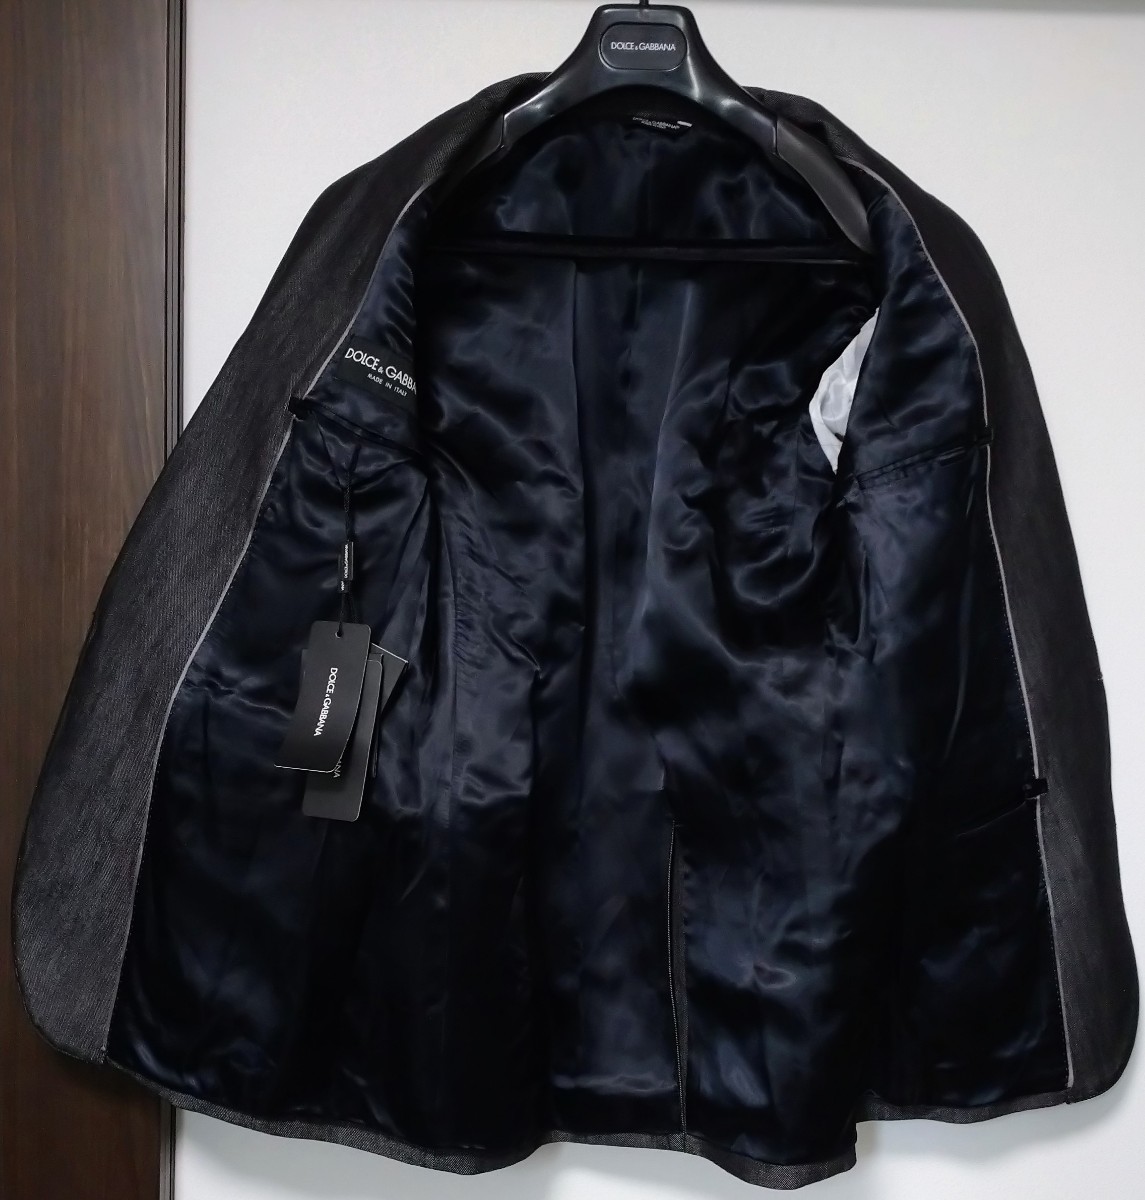  новый товар Dolce & Gabbana tailored jacket шаль цвет чёрный 48